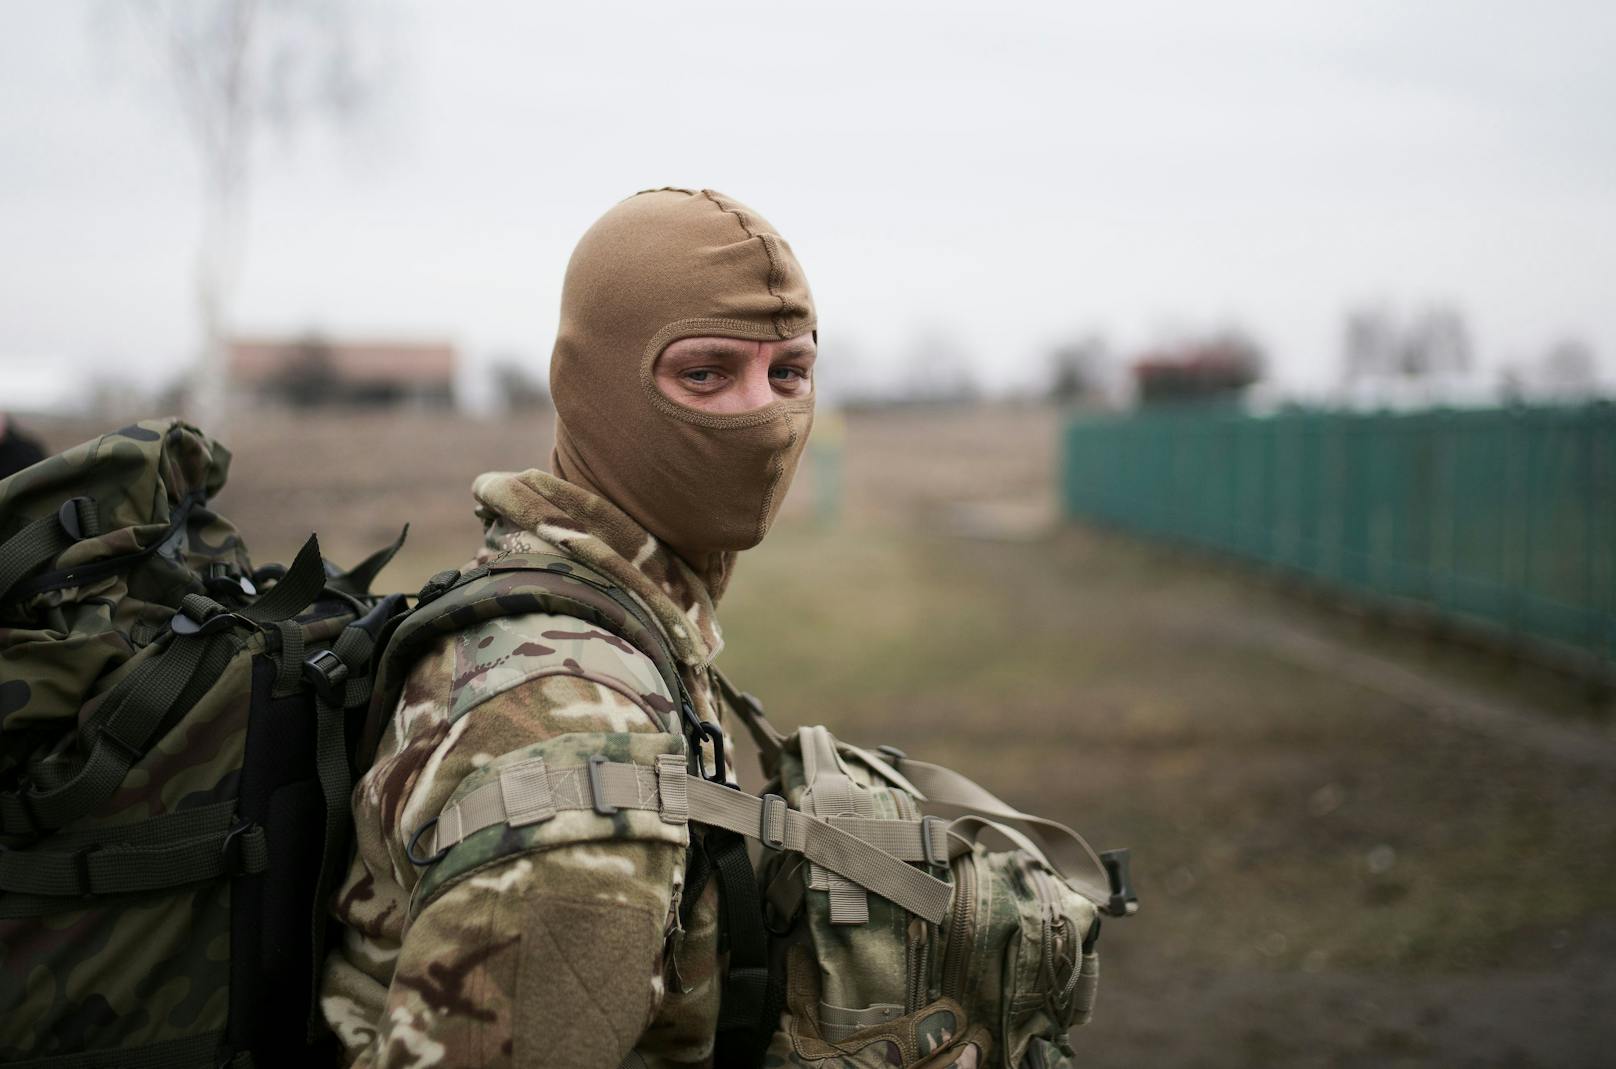 Der Ukraine-Krieg zieht auch Tausende ausländische Kämpfer an, berichtet ein Söldner vor Ort.